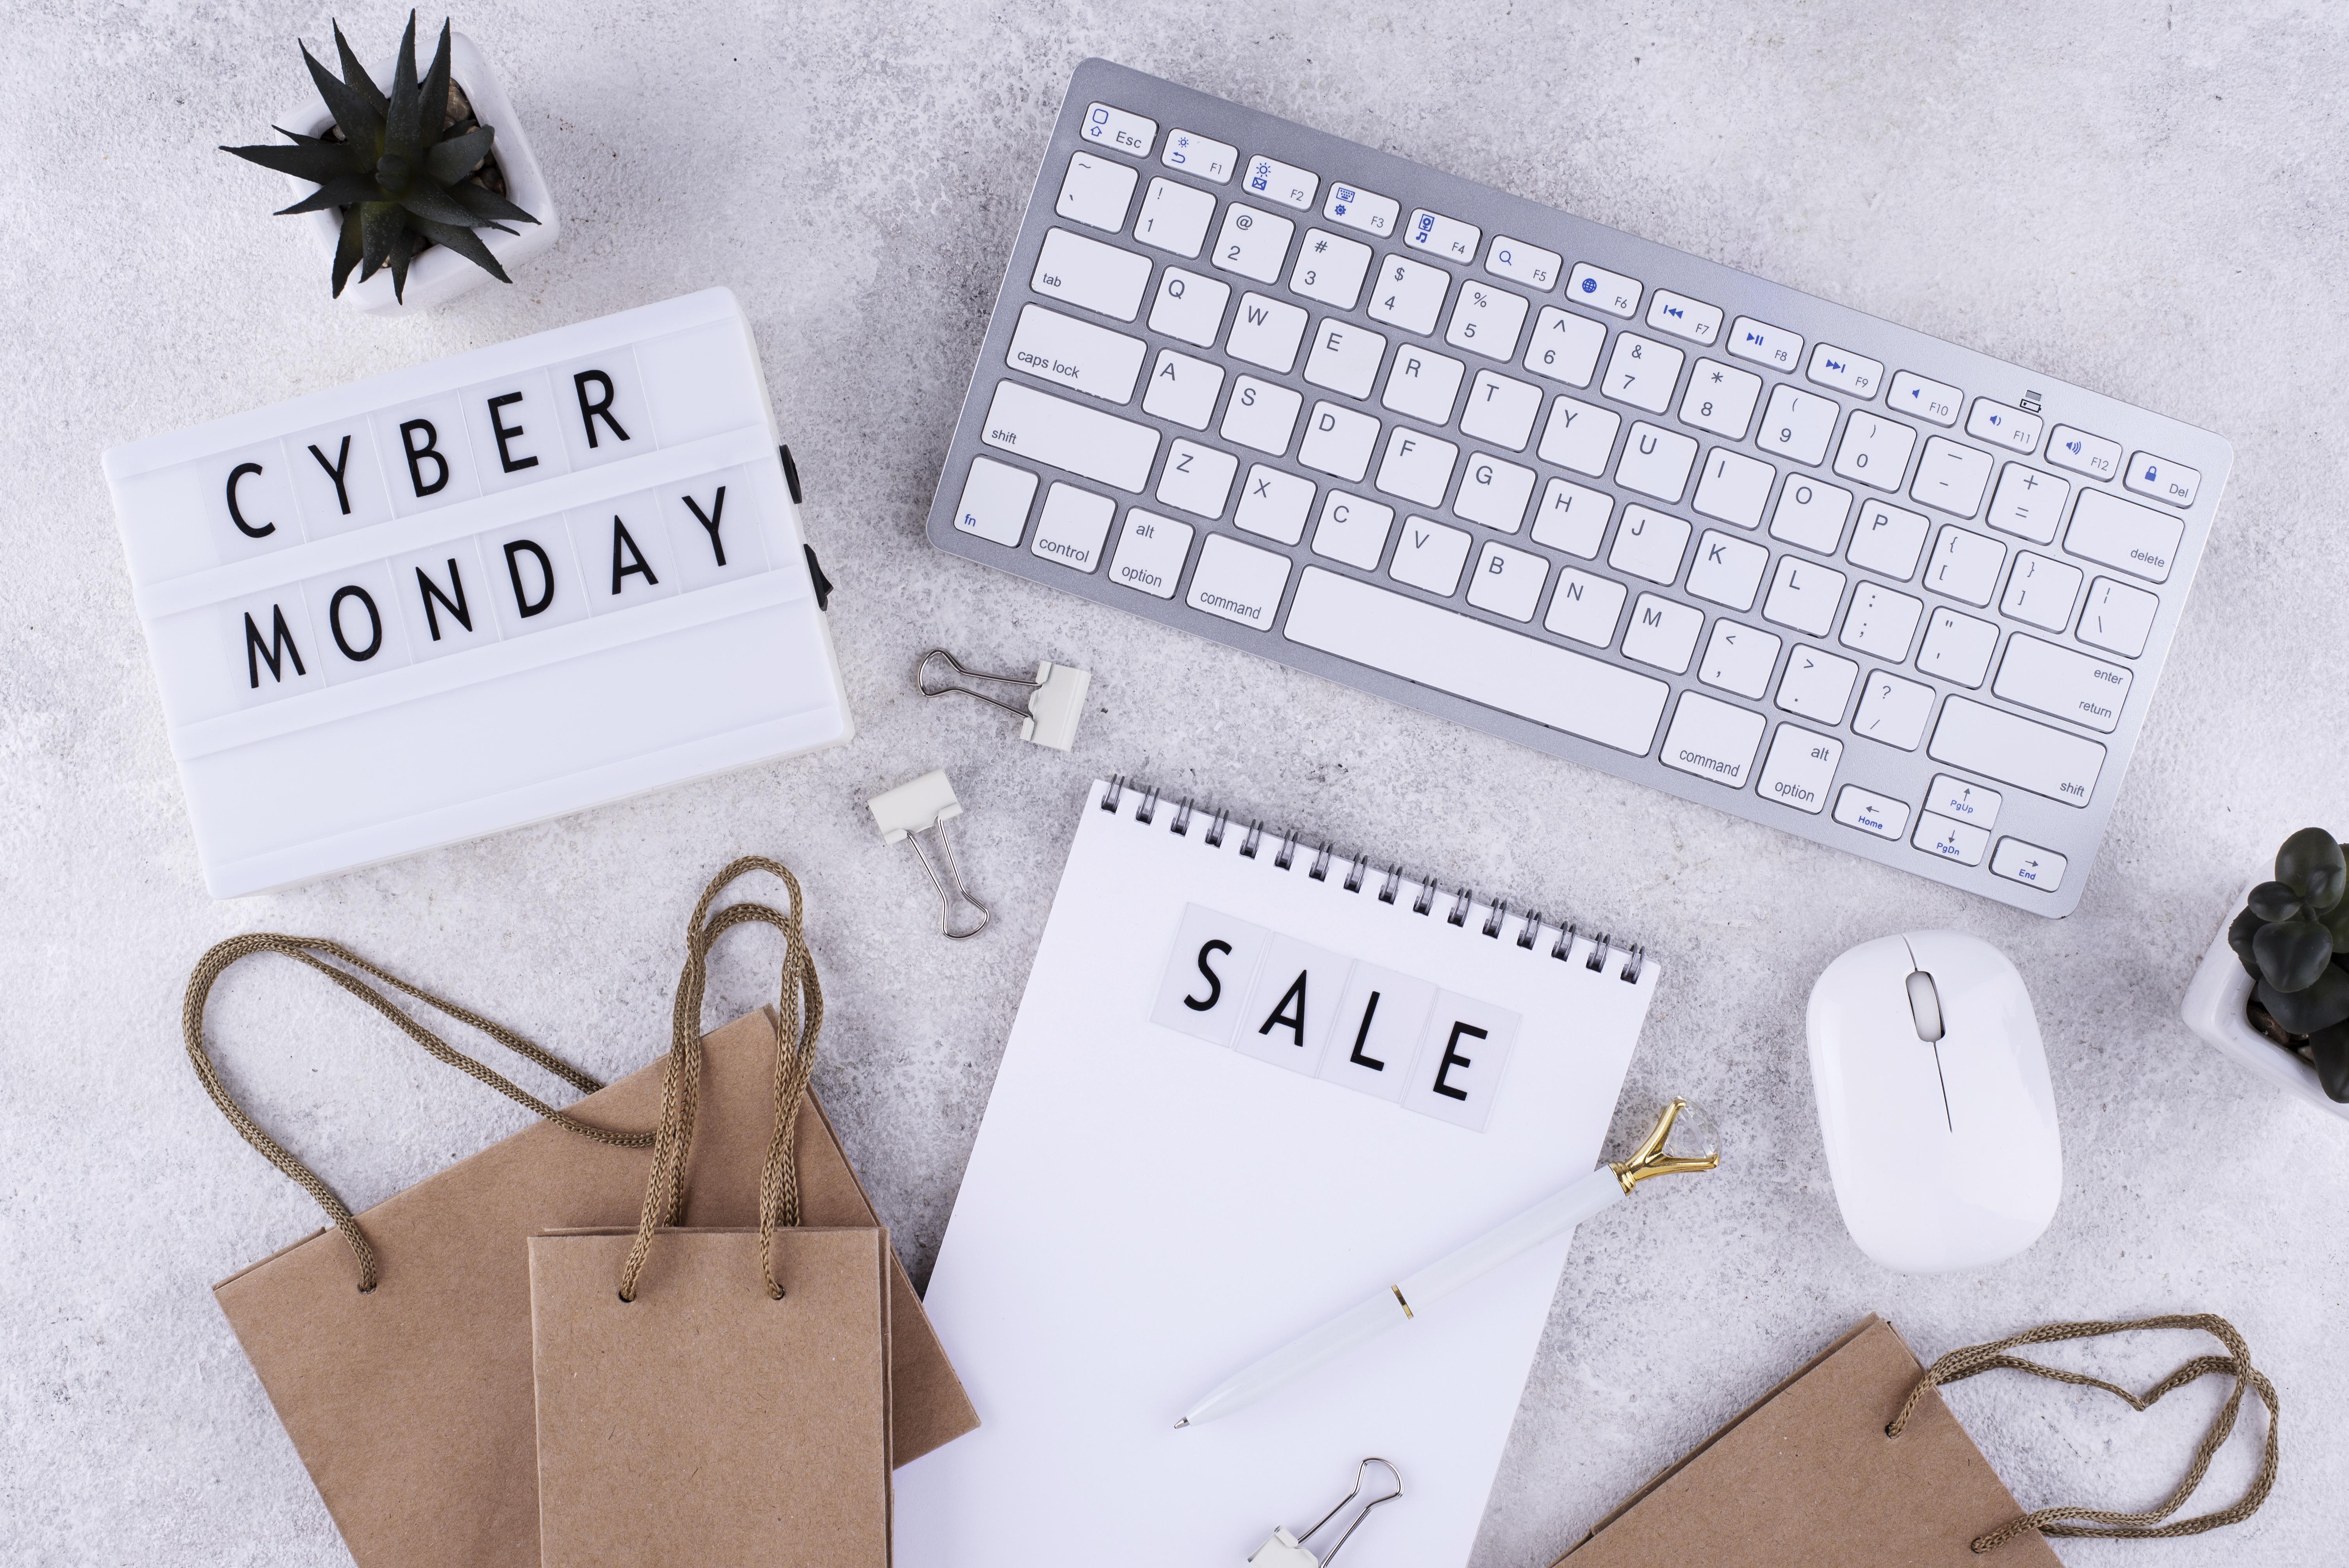 Según conocedores del mercado, la mejor opción para comprar en el Cyber Monday es Amazon, porque es el e-commerce internacional que puede dar más respaldo y garantía.